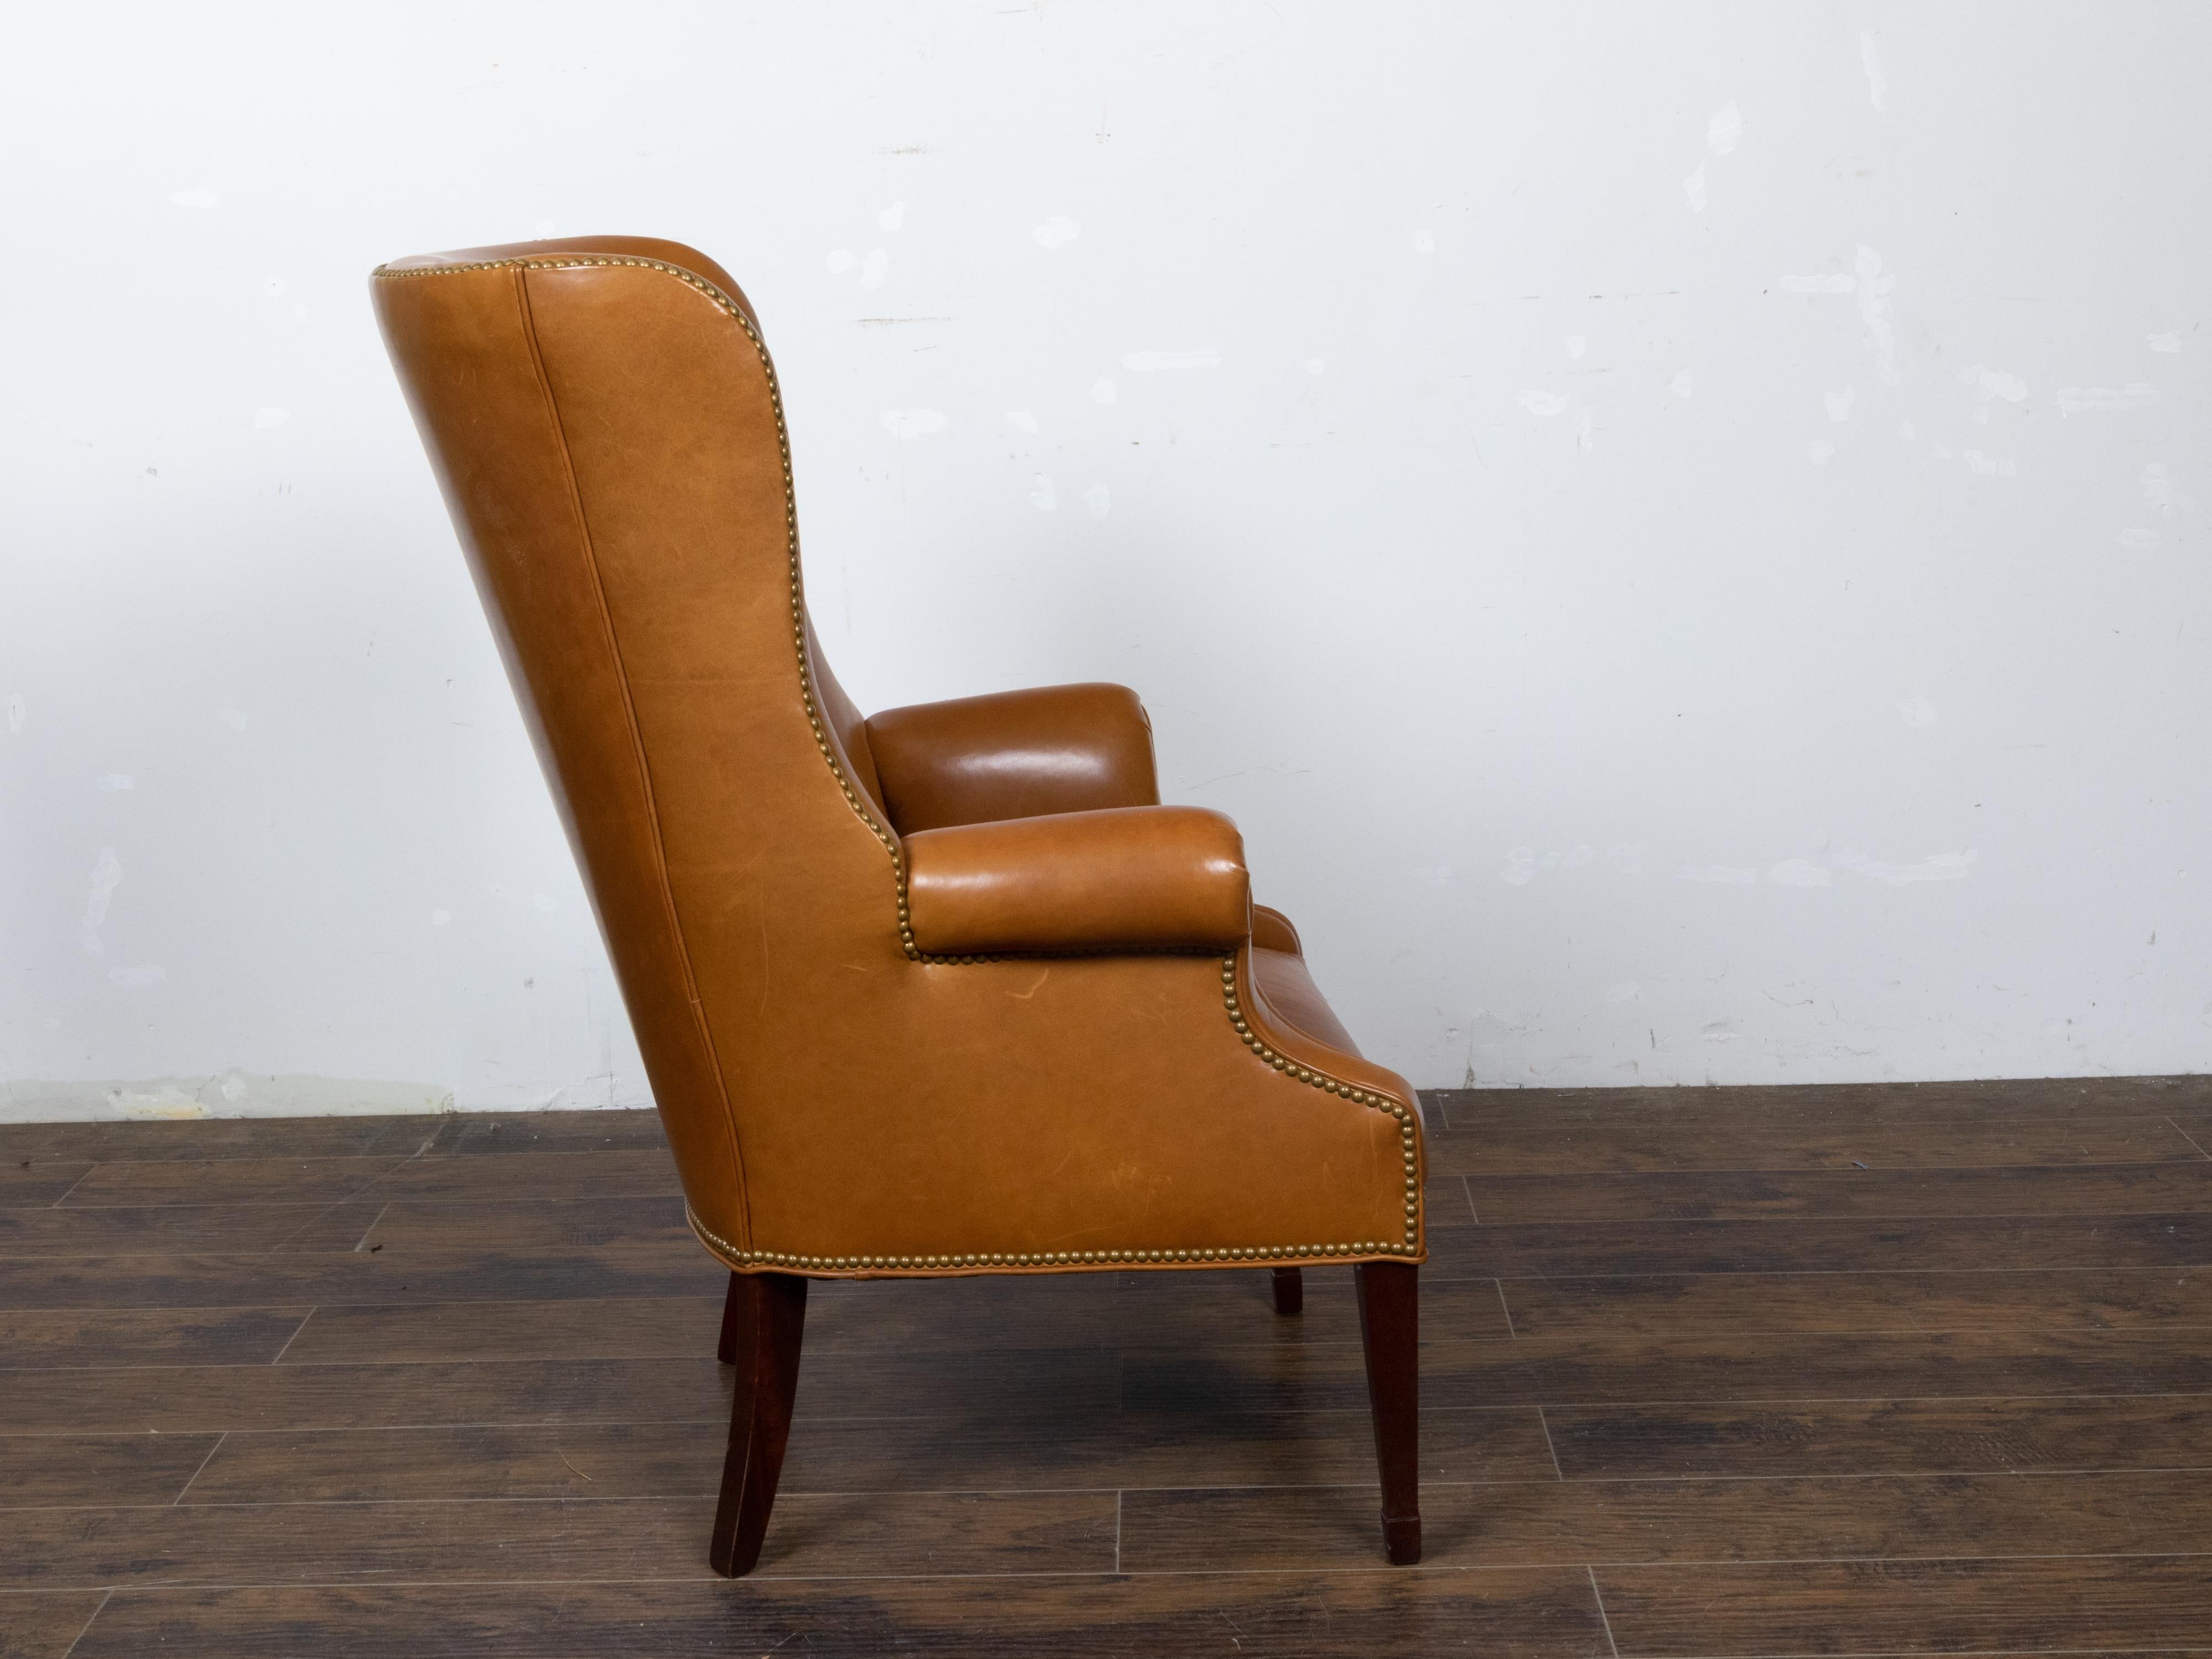 Englischer Brown Leather Wingback Chair mit Messingnägeln, ca. 1930-1940 (20. Jahrhundert) im Angebot